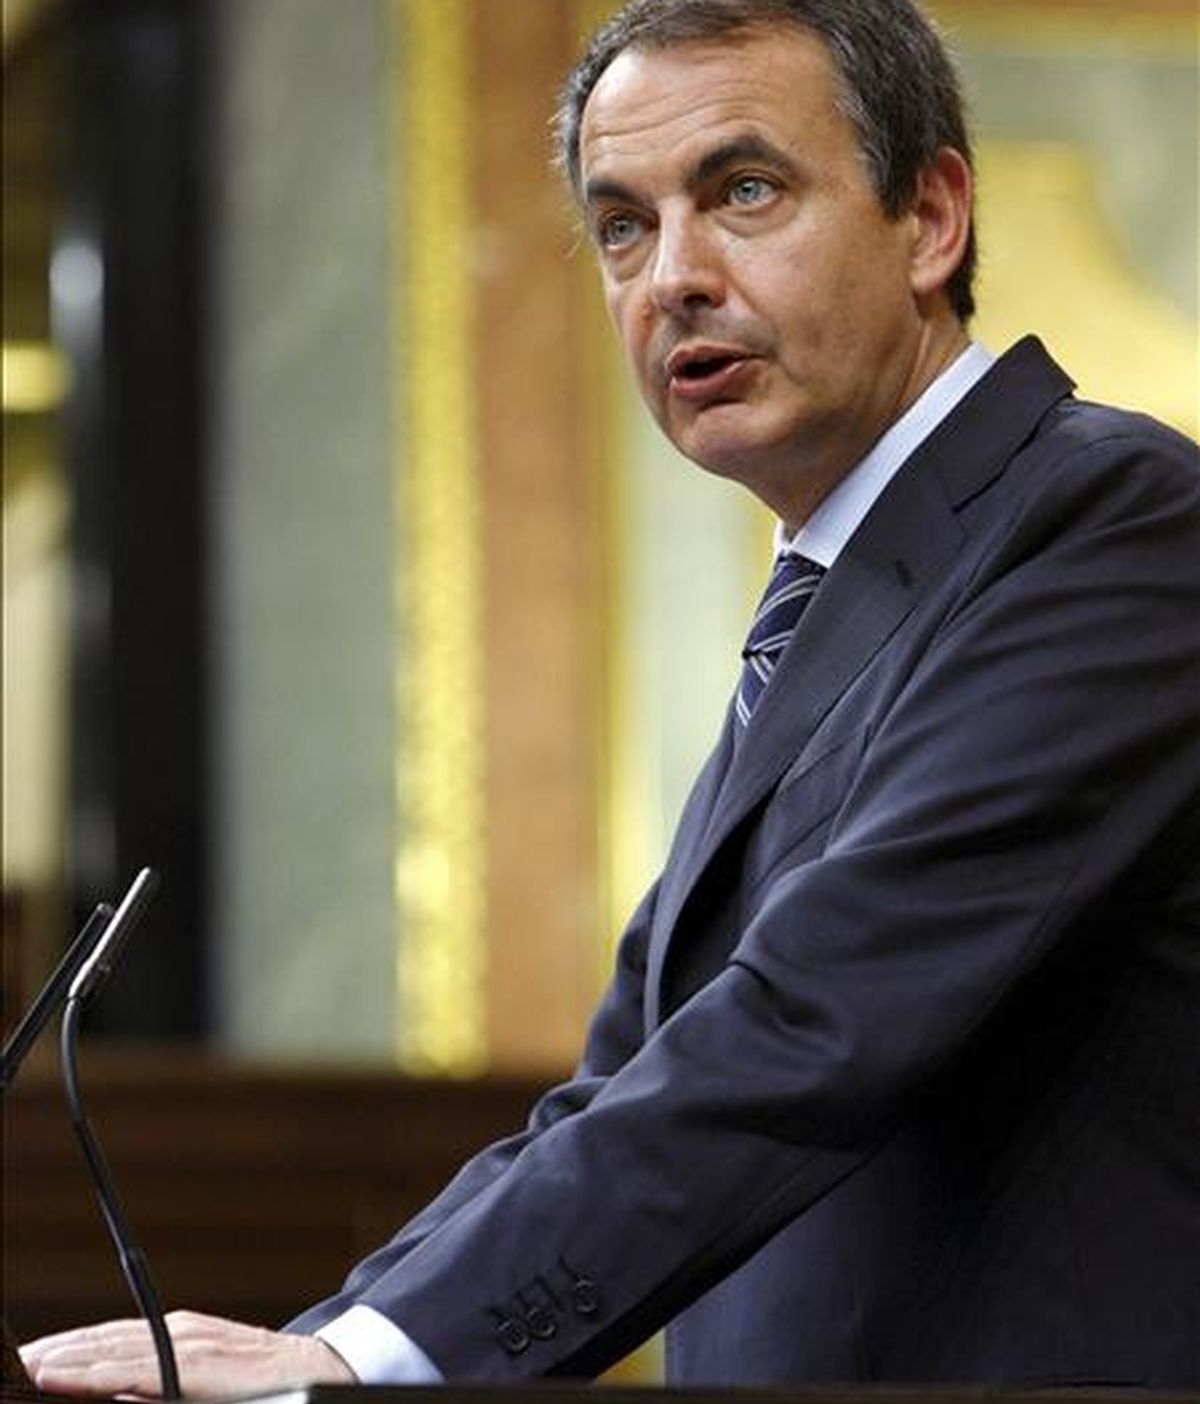 El presidente del Gobierno, José Luis Rodríguez Zapatero, durante una de sus intervenciones en la sesión de control al Ejecutivo que se celebra en el Congreso, y en la que se habla, entre otros asuntos, de las críticas del Banco de España al aumento del déficit público. EFE